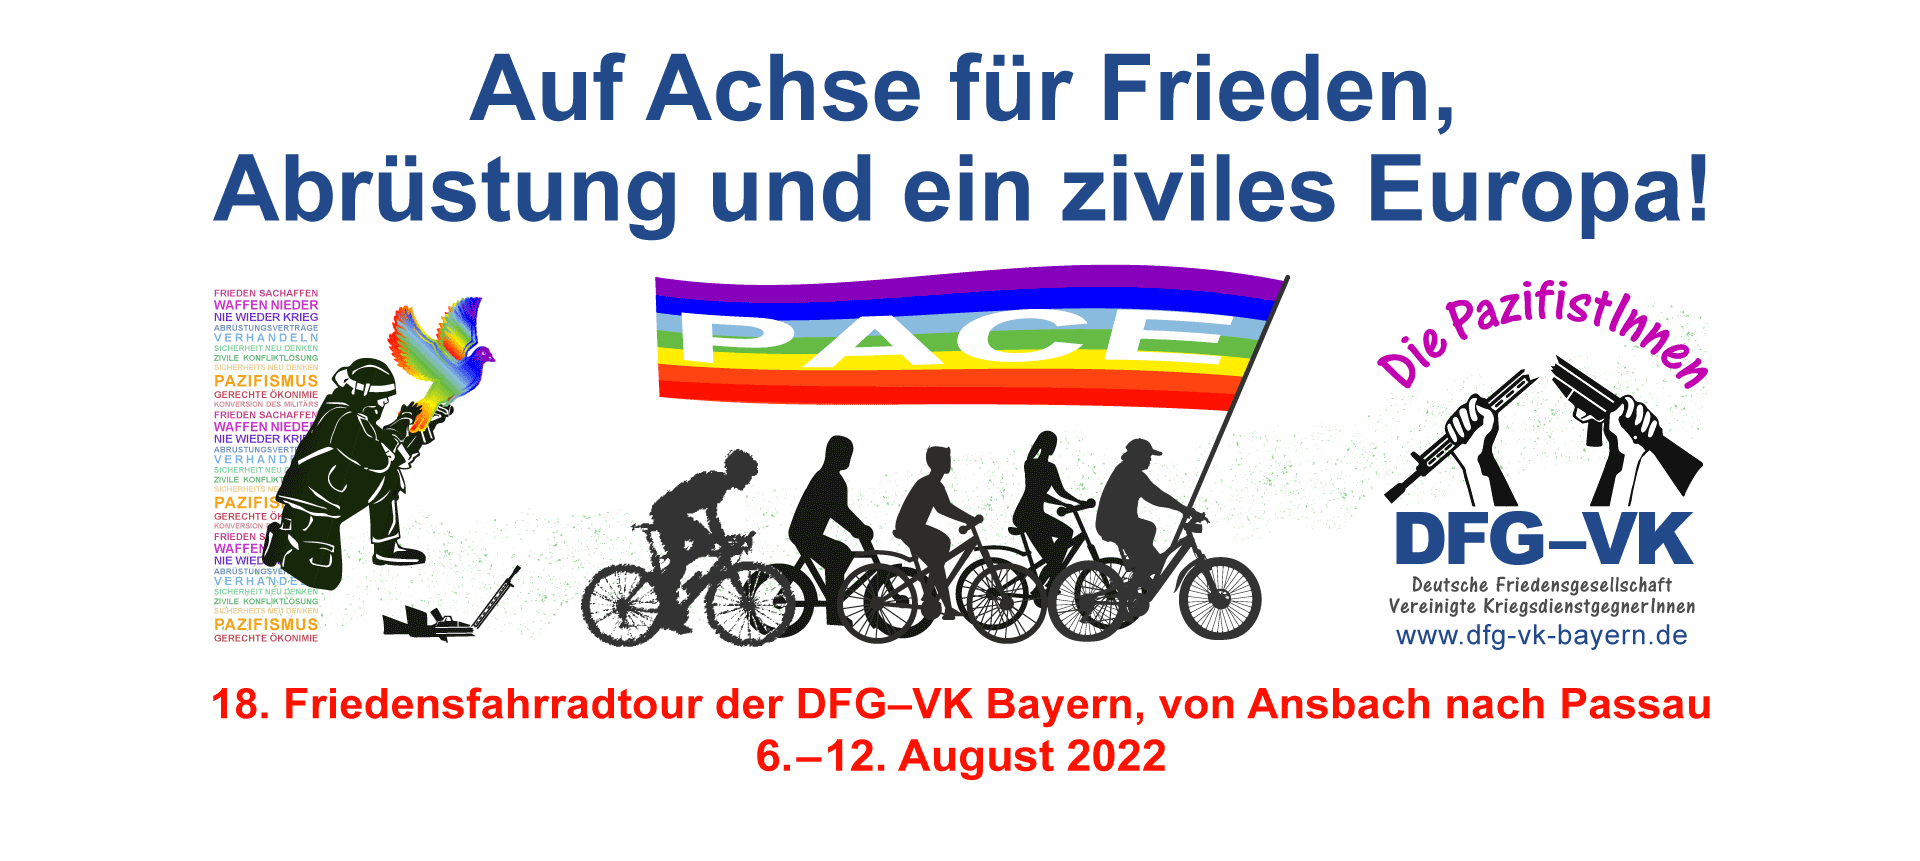 DFG-VK, Deutsche Friedensgesellschaft Vereinigte KriegsdienstgegnerInnen, Friedensfahrradtour, Bayern.